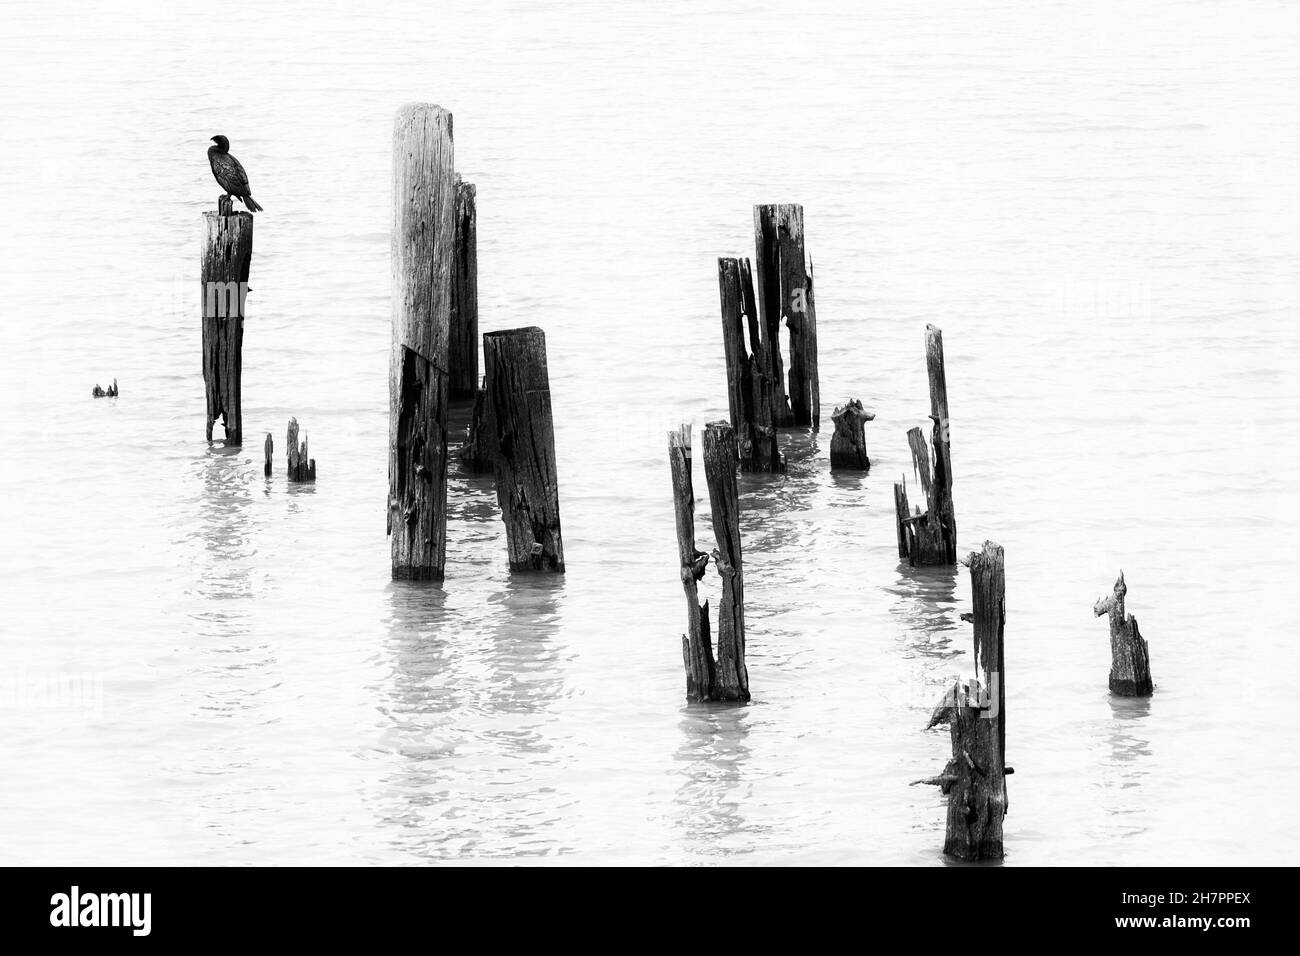 Imagen en blanco y negro de alto contraste de los pilotes de Cormorant y de madera antigua, River Thames, Londres, Reino Unido. Foto de stock